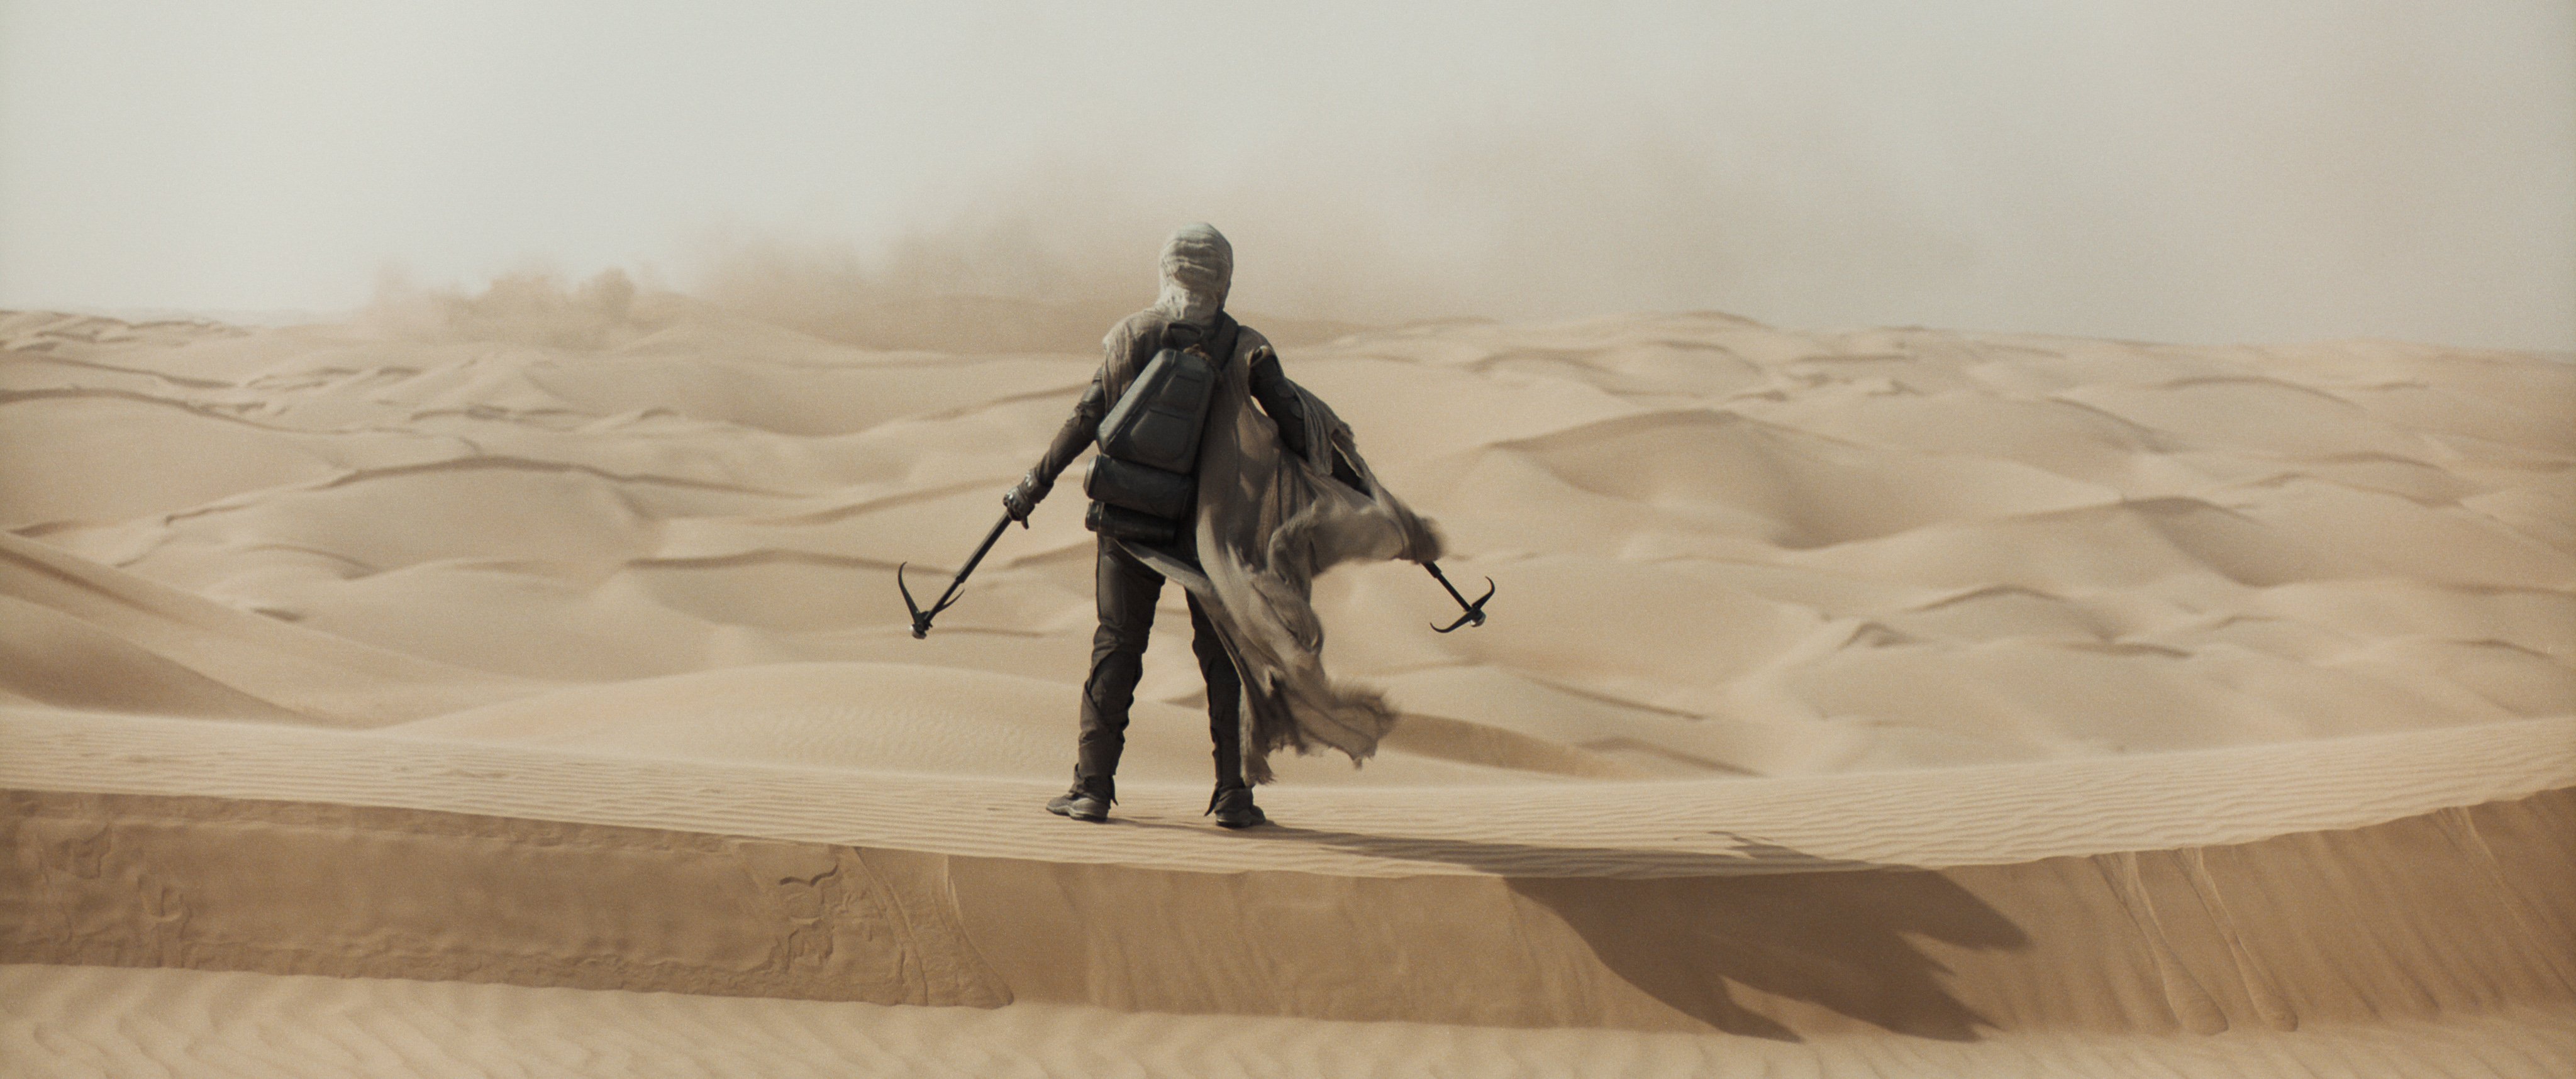 Dune Featured